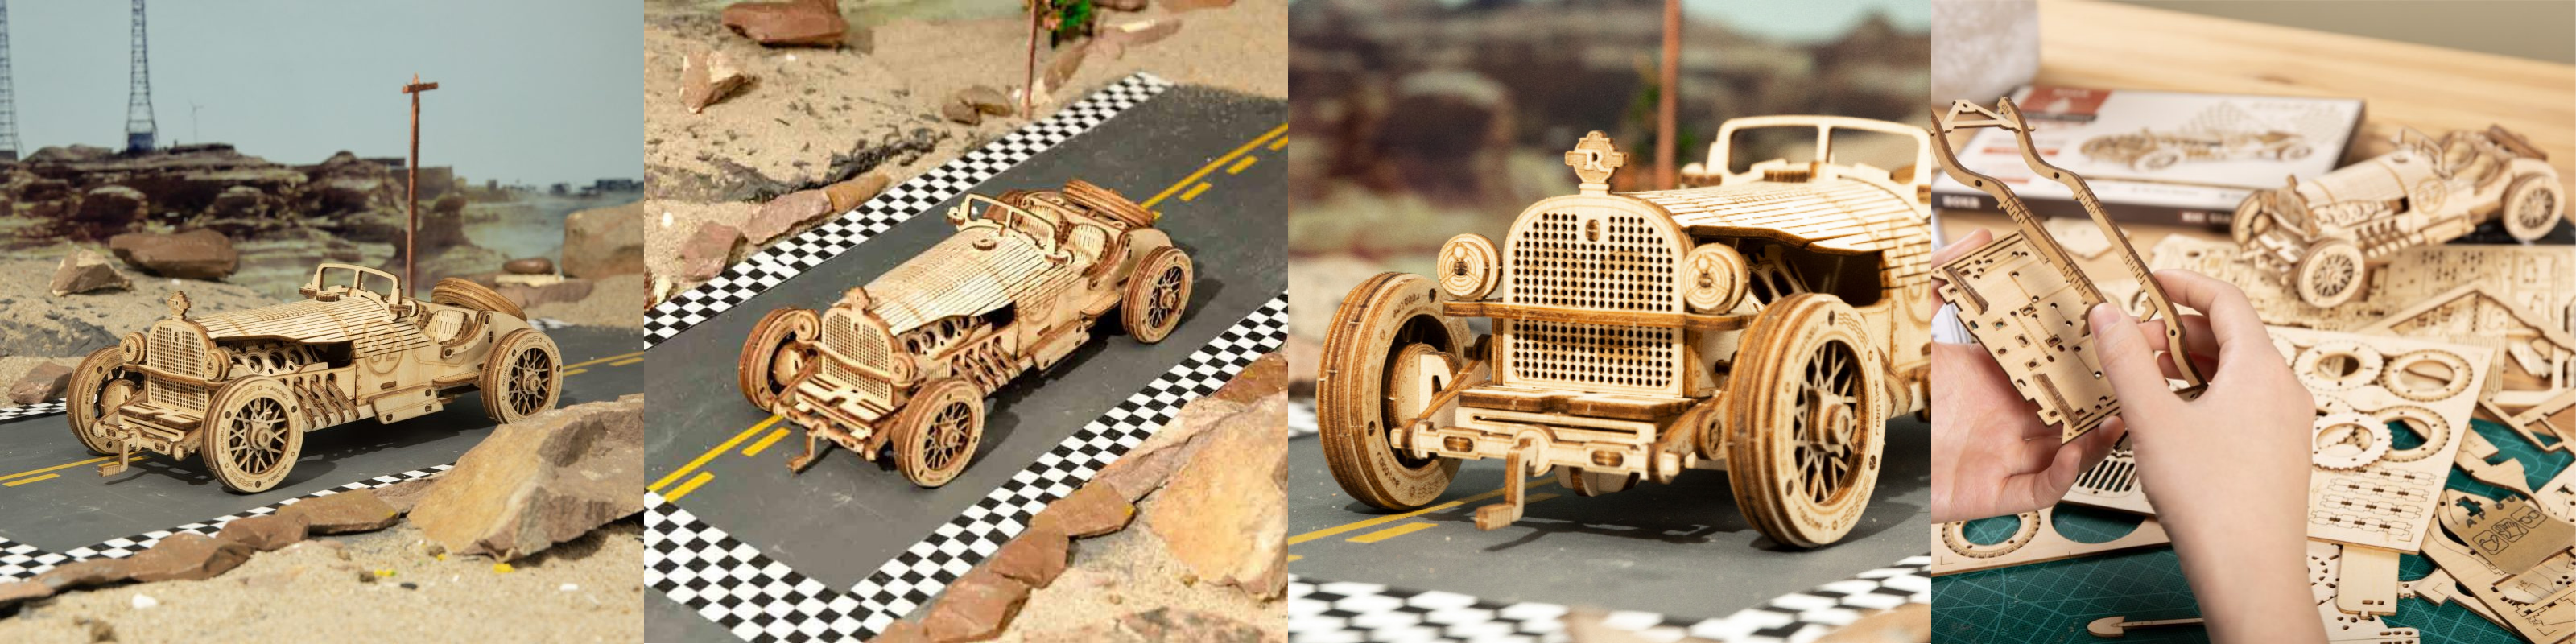 Maquette 3d en bois d'une voiture vintage tacot - Rokr-Robotime